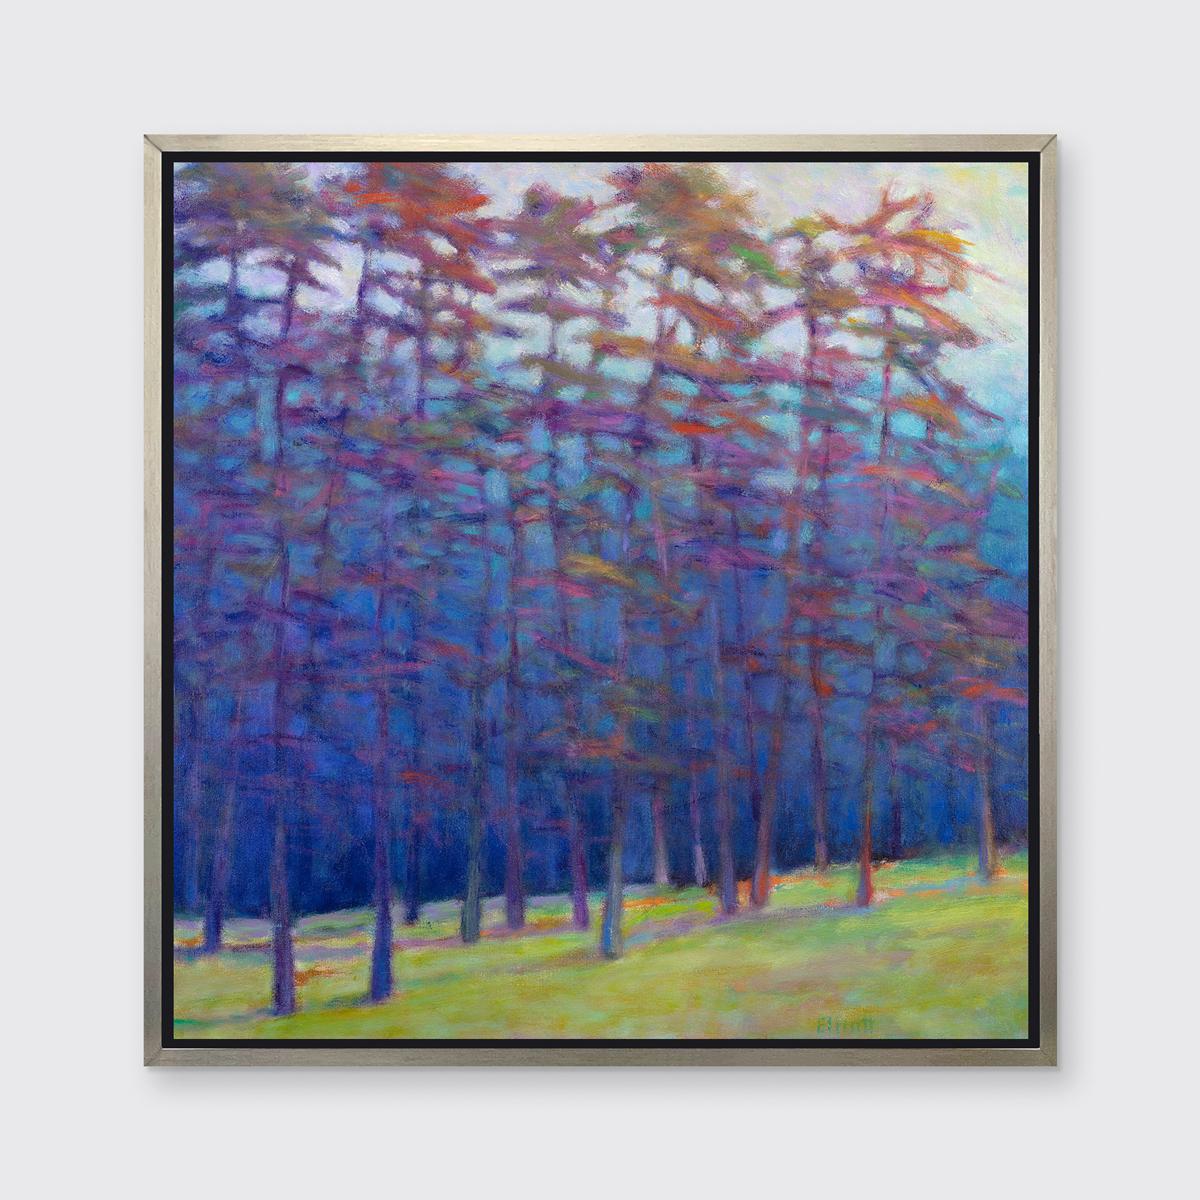 Dieser abstrakte Landschaftsdruck von Ken Elliott in limitierter Auflage zeigt eine abstrahierte Waldlandschaft mit kühlen blauen und violetten Bäumen und einem gelbgrünen Waldboden. Die kühlen Blautöne werden durch helle, gesättigte Tupfer in